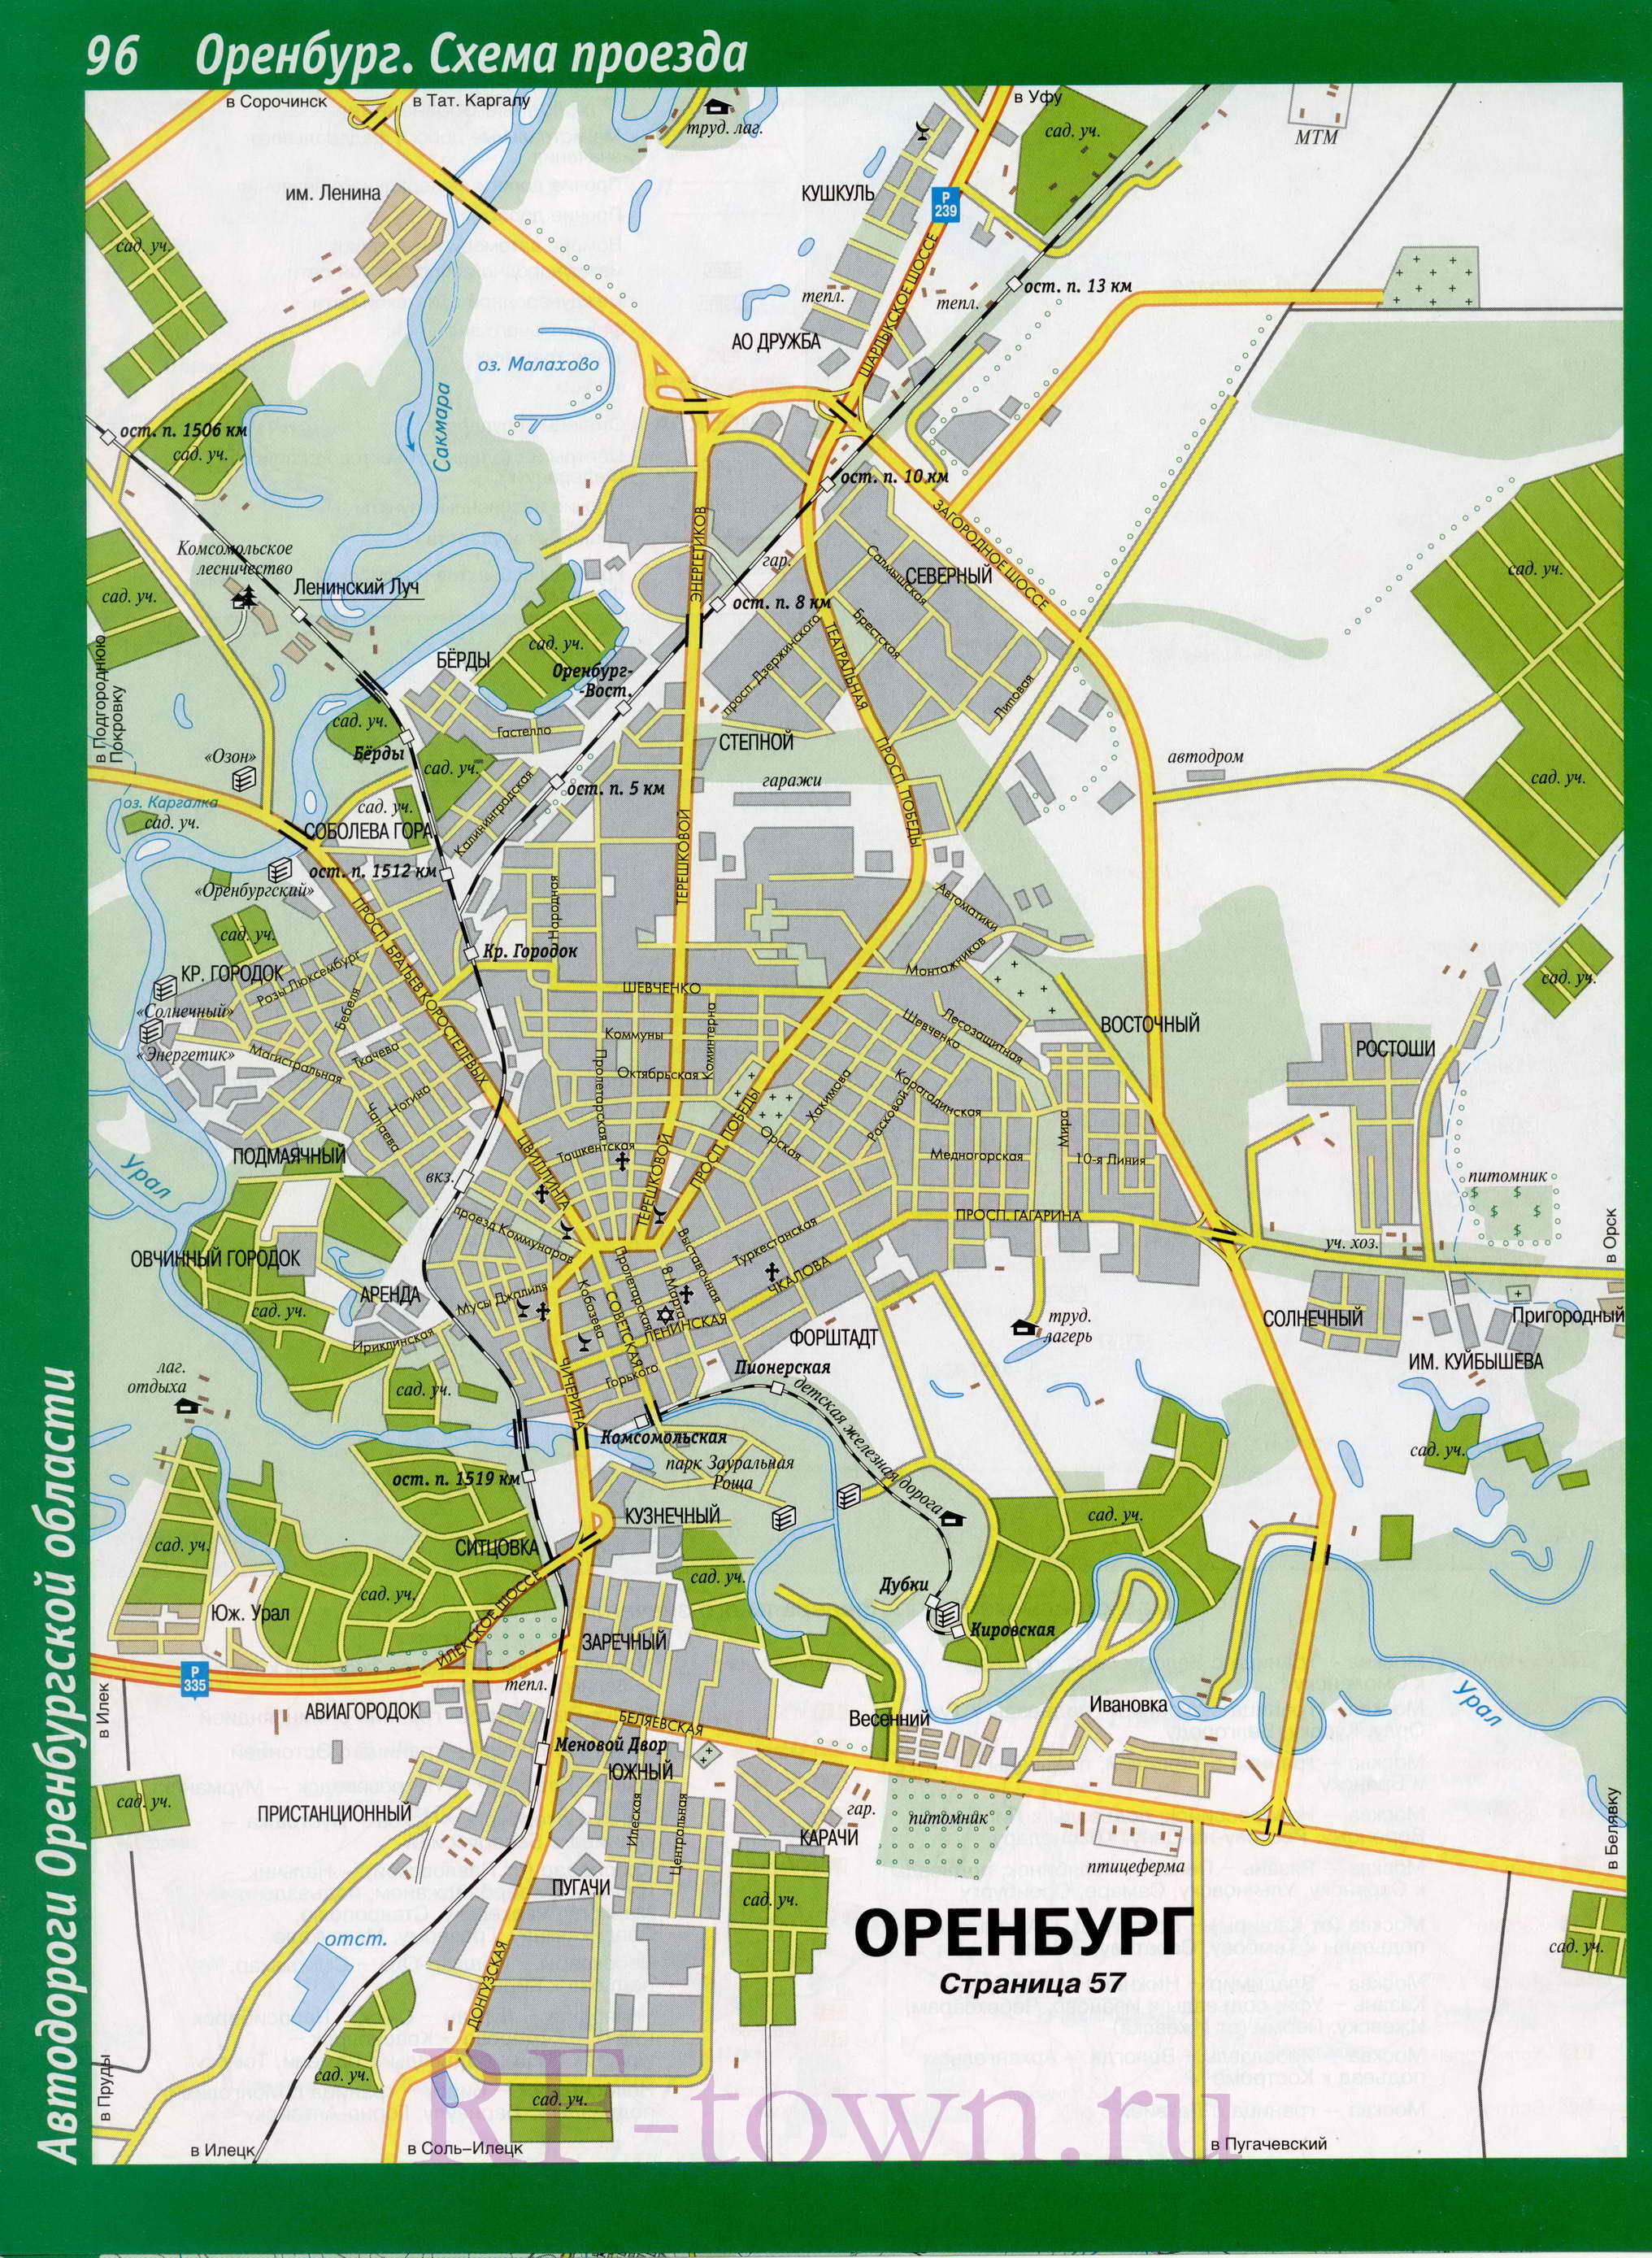  Карта улиц Оренбурга. Подробная карта улиц города Оренбург со схемой проезда транспорта, A0 - 